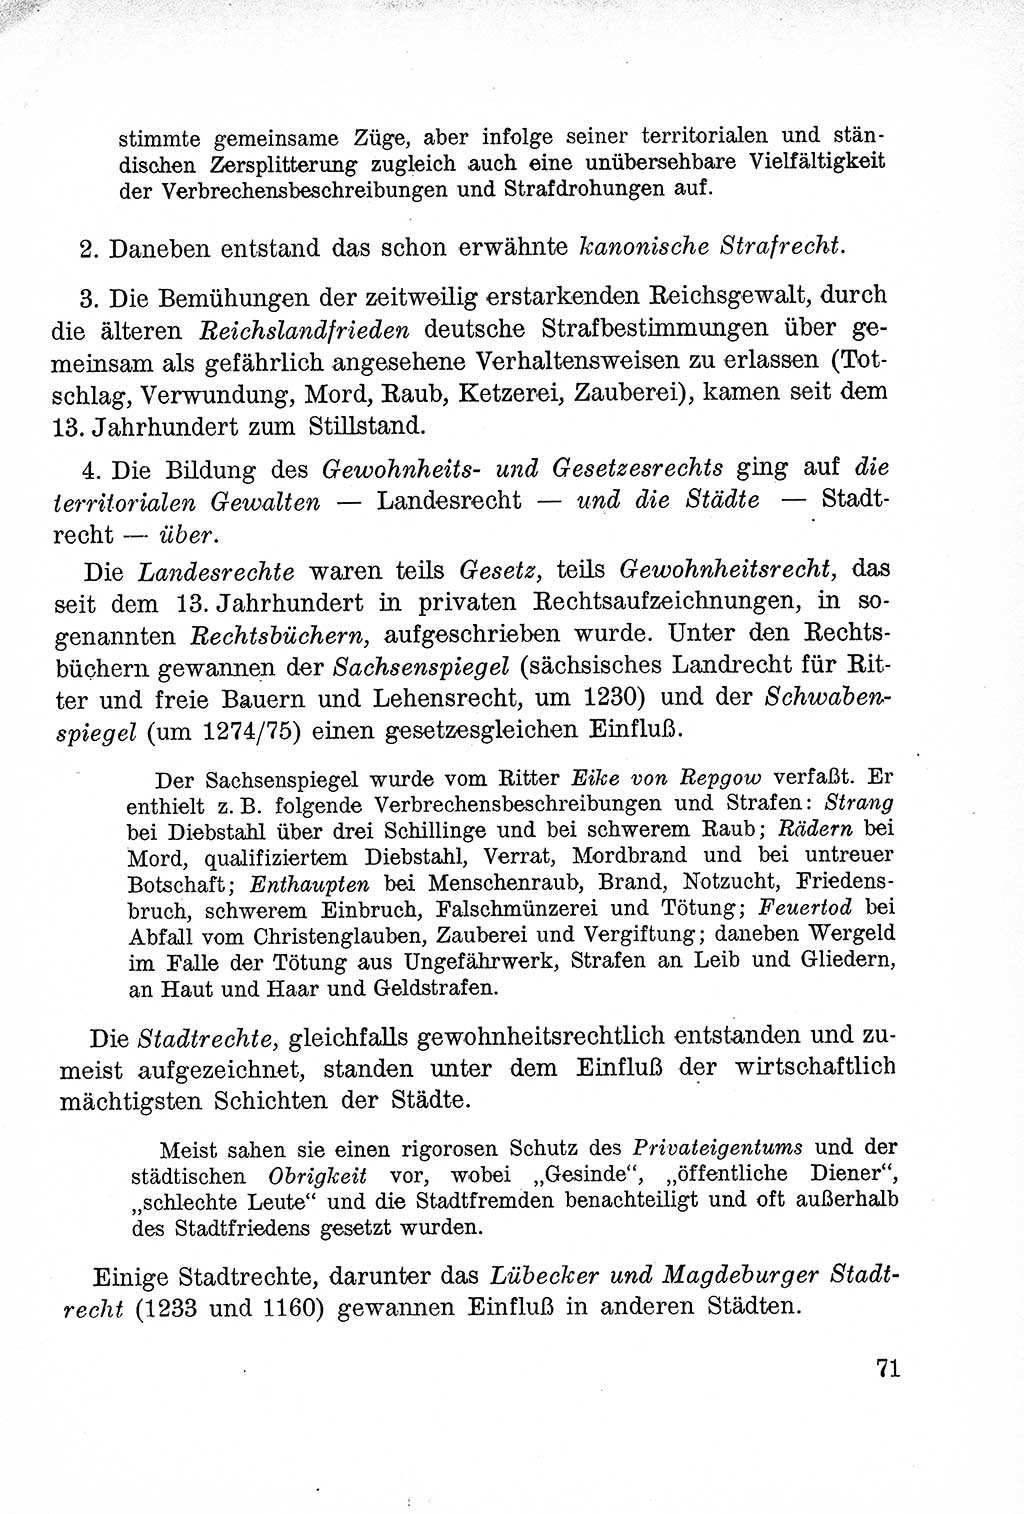 Lehrbuch des Strafrechts der Deutschen Demokratischen Republik (DDR), Allgemeiner Teil 1957, Seite 71 (Lb. Strafr. DDR AT 1957, S. 71)